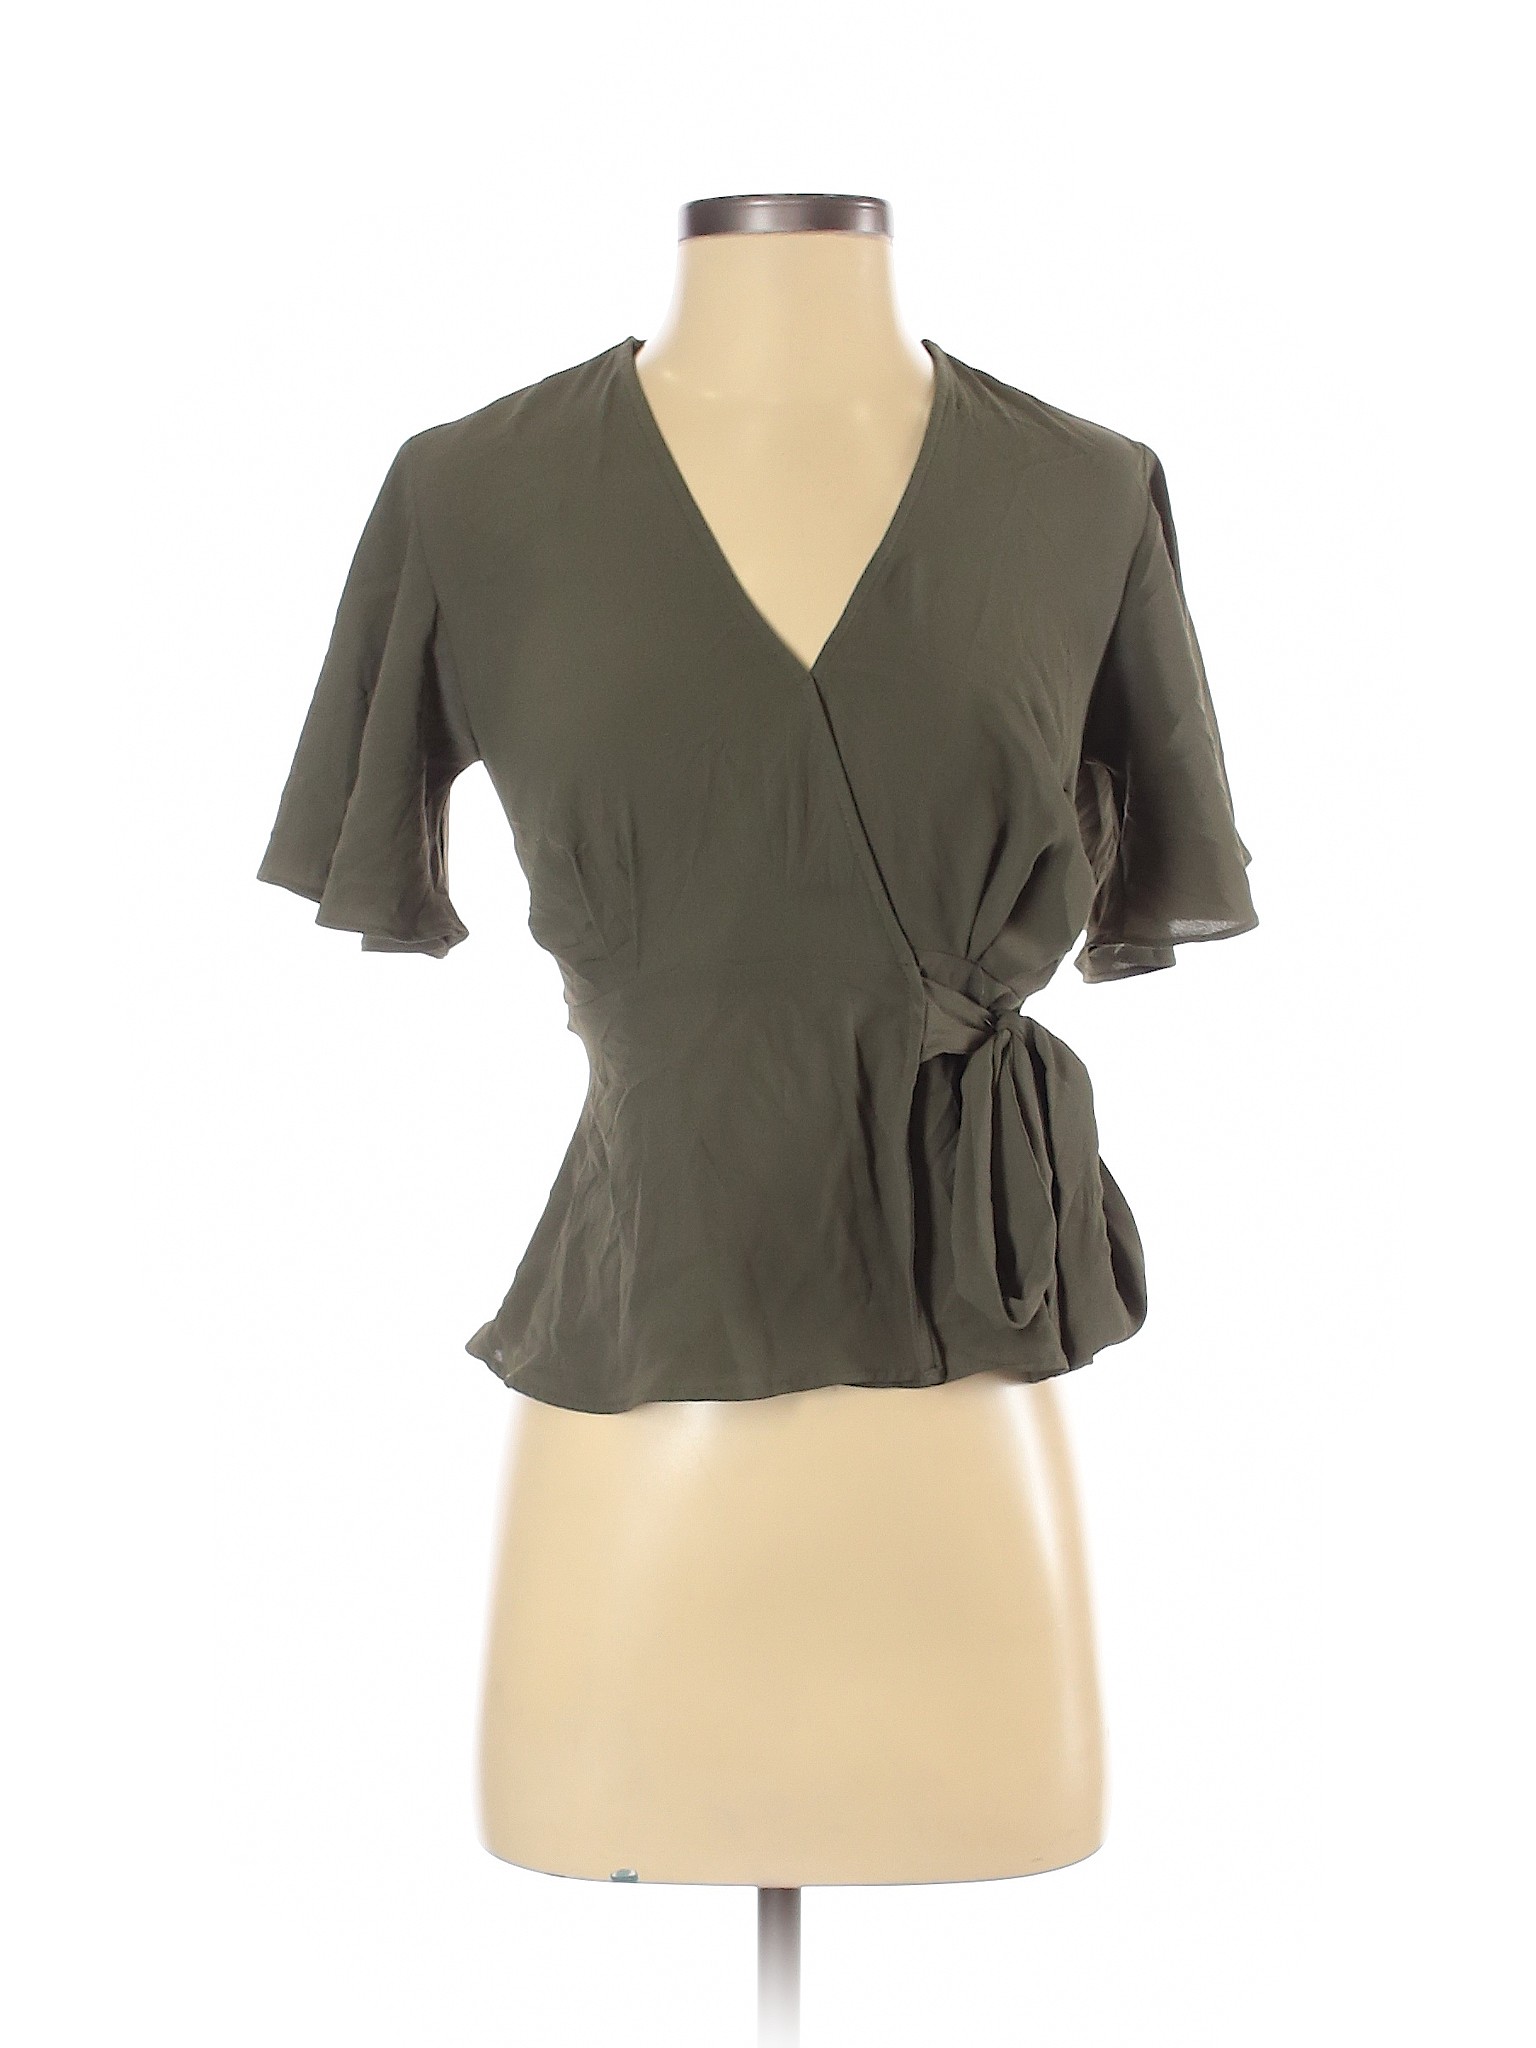 Atmosphere Women Green Short Sleeve Blouse 2 | eBay